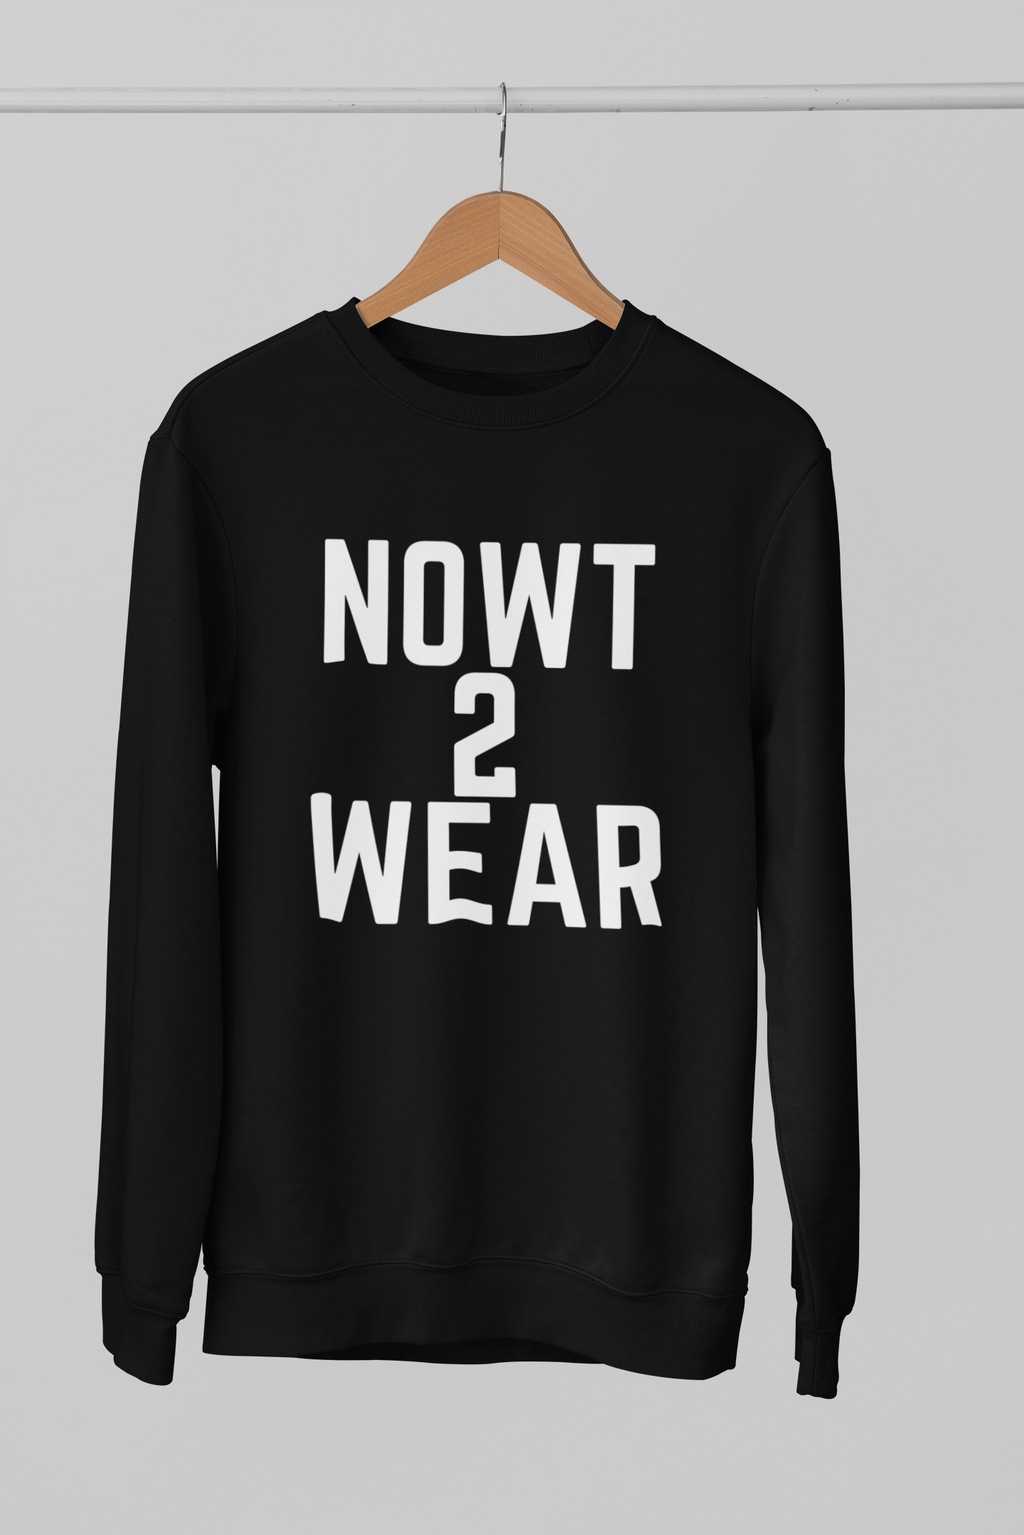 NOWT2WEAR Sweatshirt Unisex